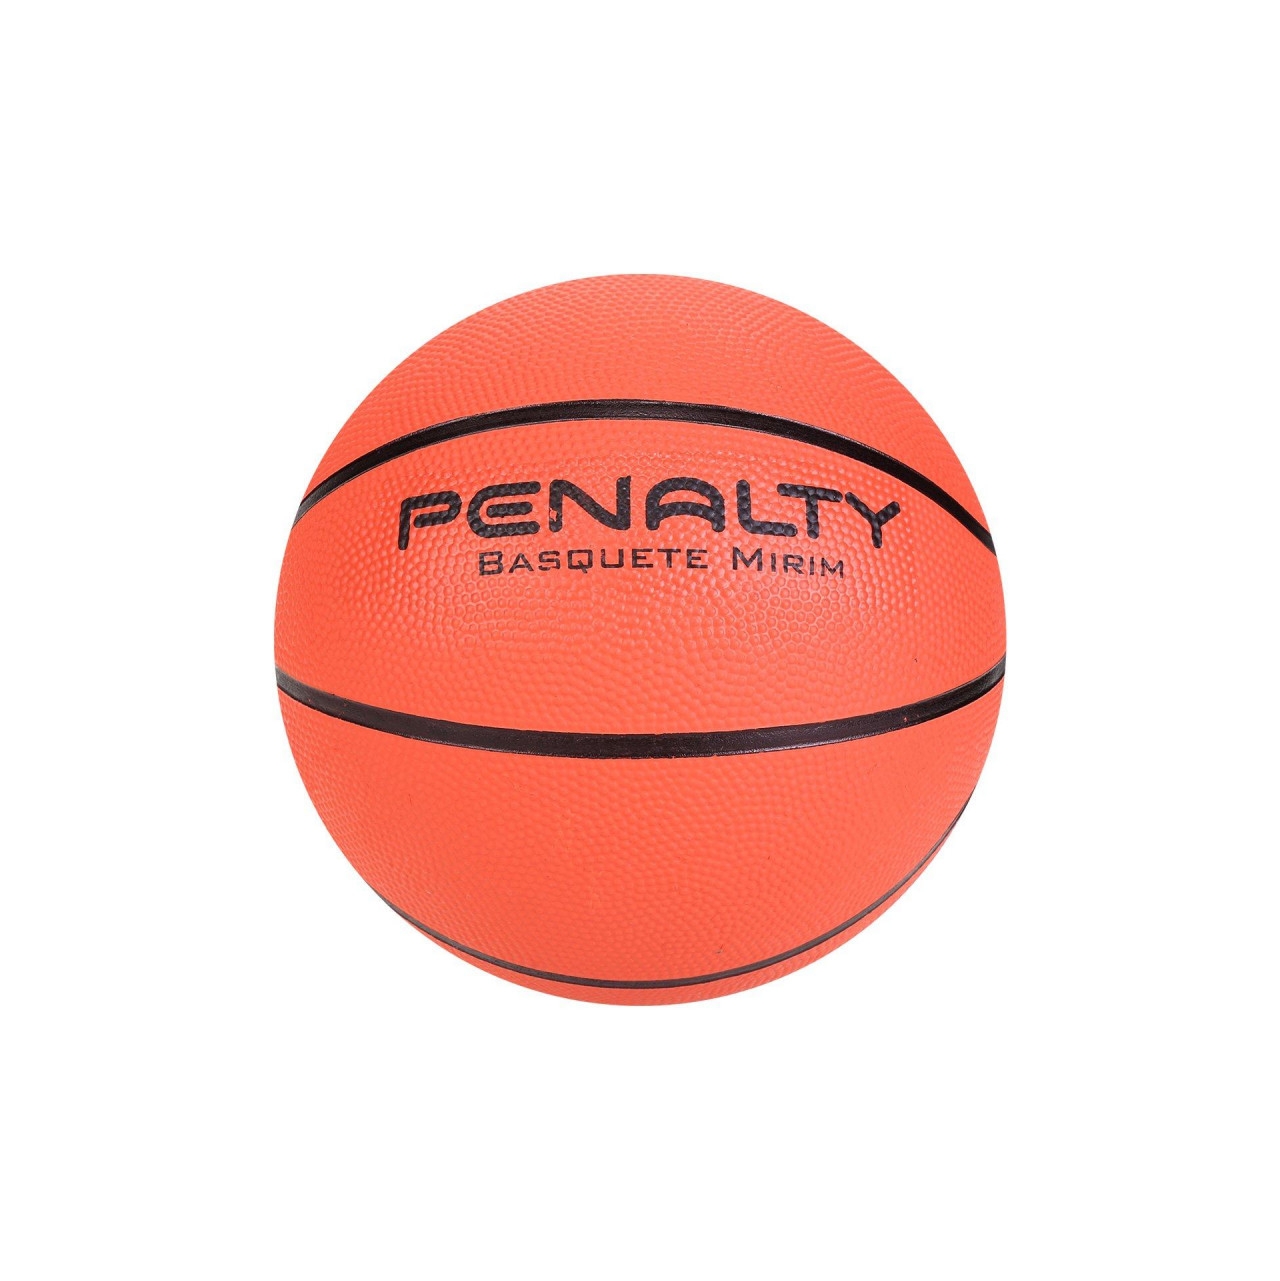 Bola de Basquete Penalty Dunk Mirim – Atacado